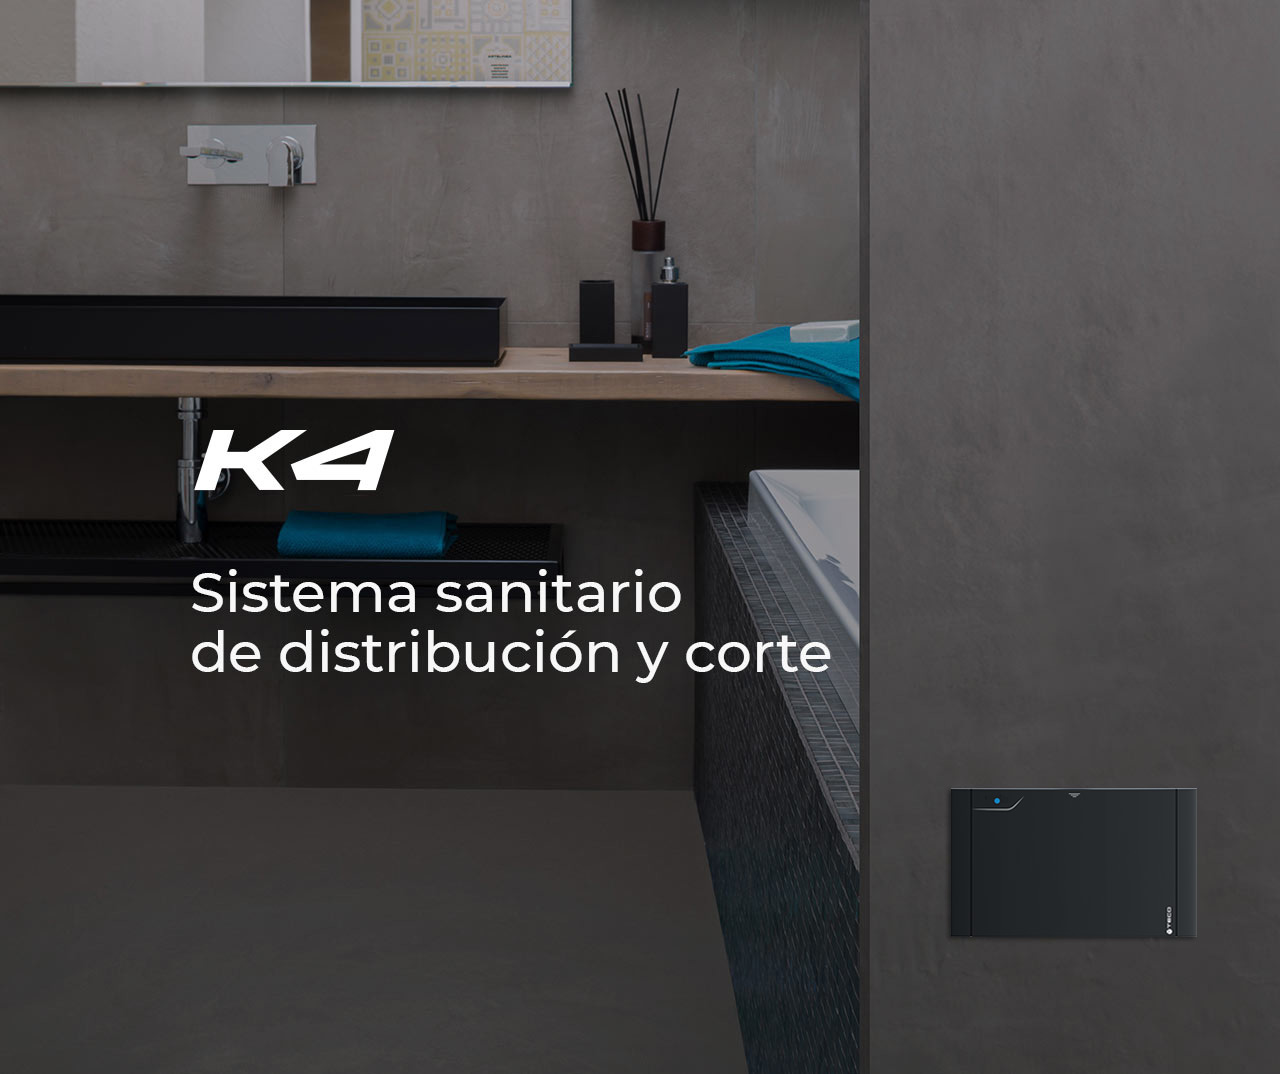 K4: Sistema de distribución y corte para instalaciones sanitarias